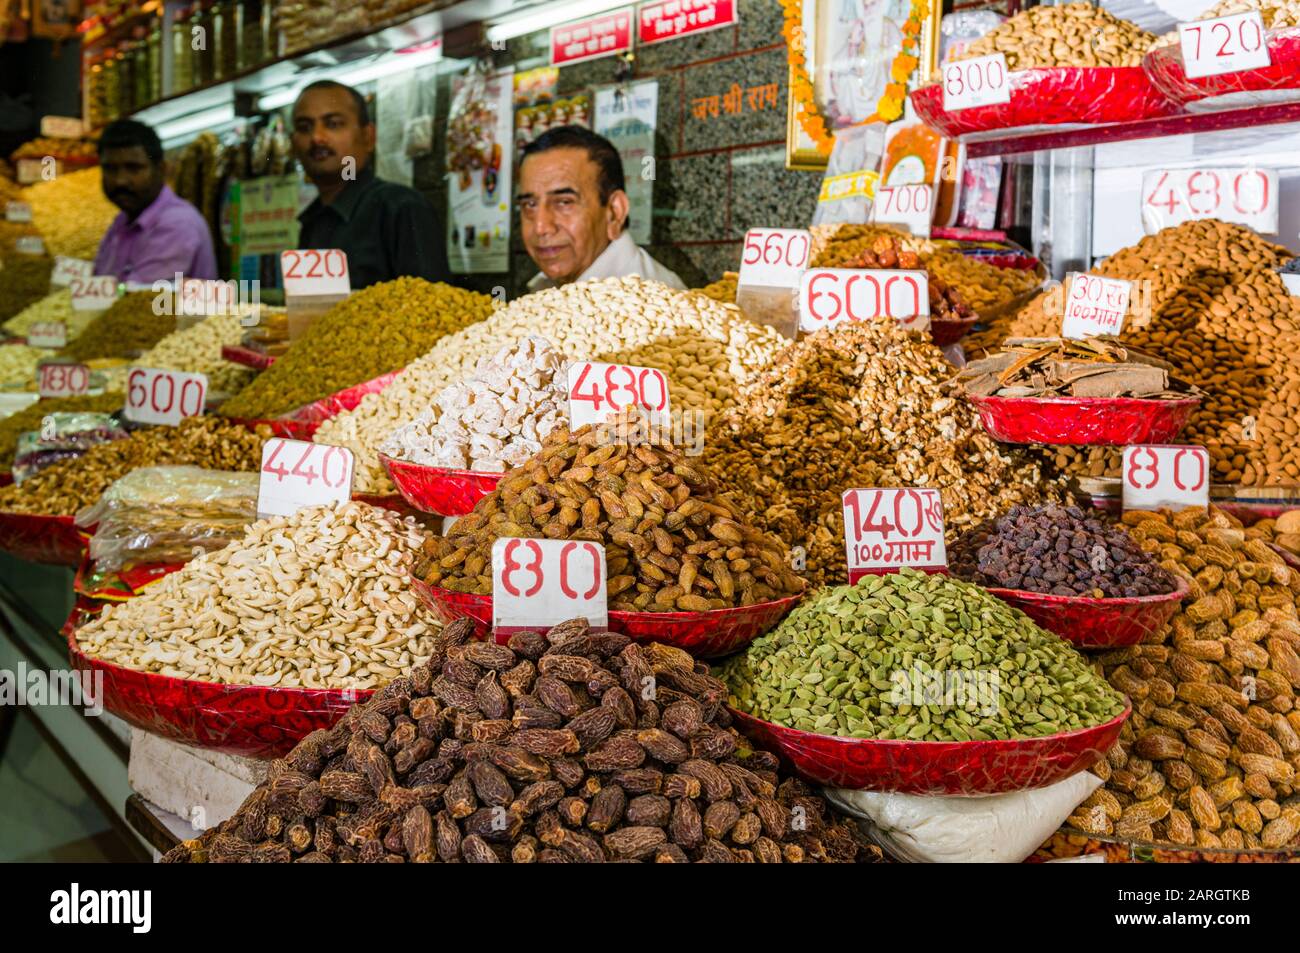 Un vendeur vend des noix et de nombreuses épices différentes dans son magasin dans le marché aux épices à Old Delhi Banque D'Images